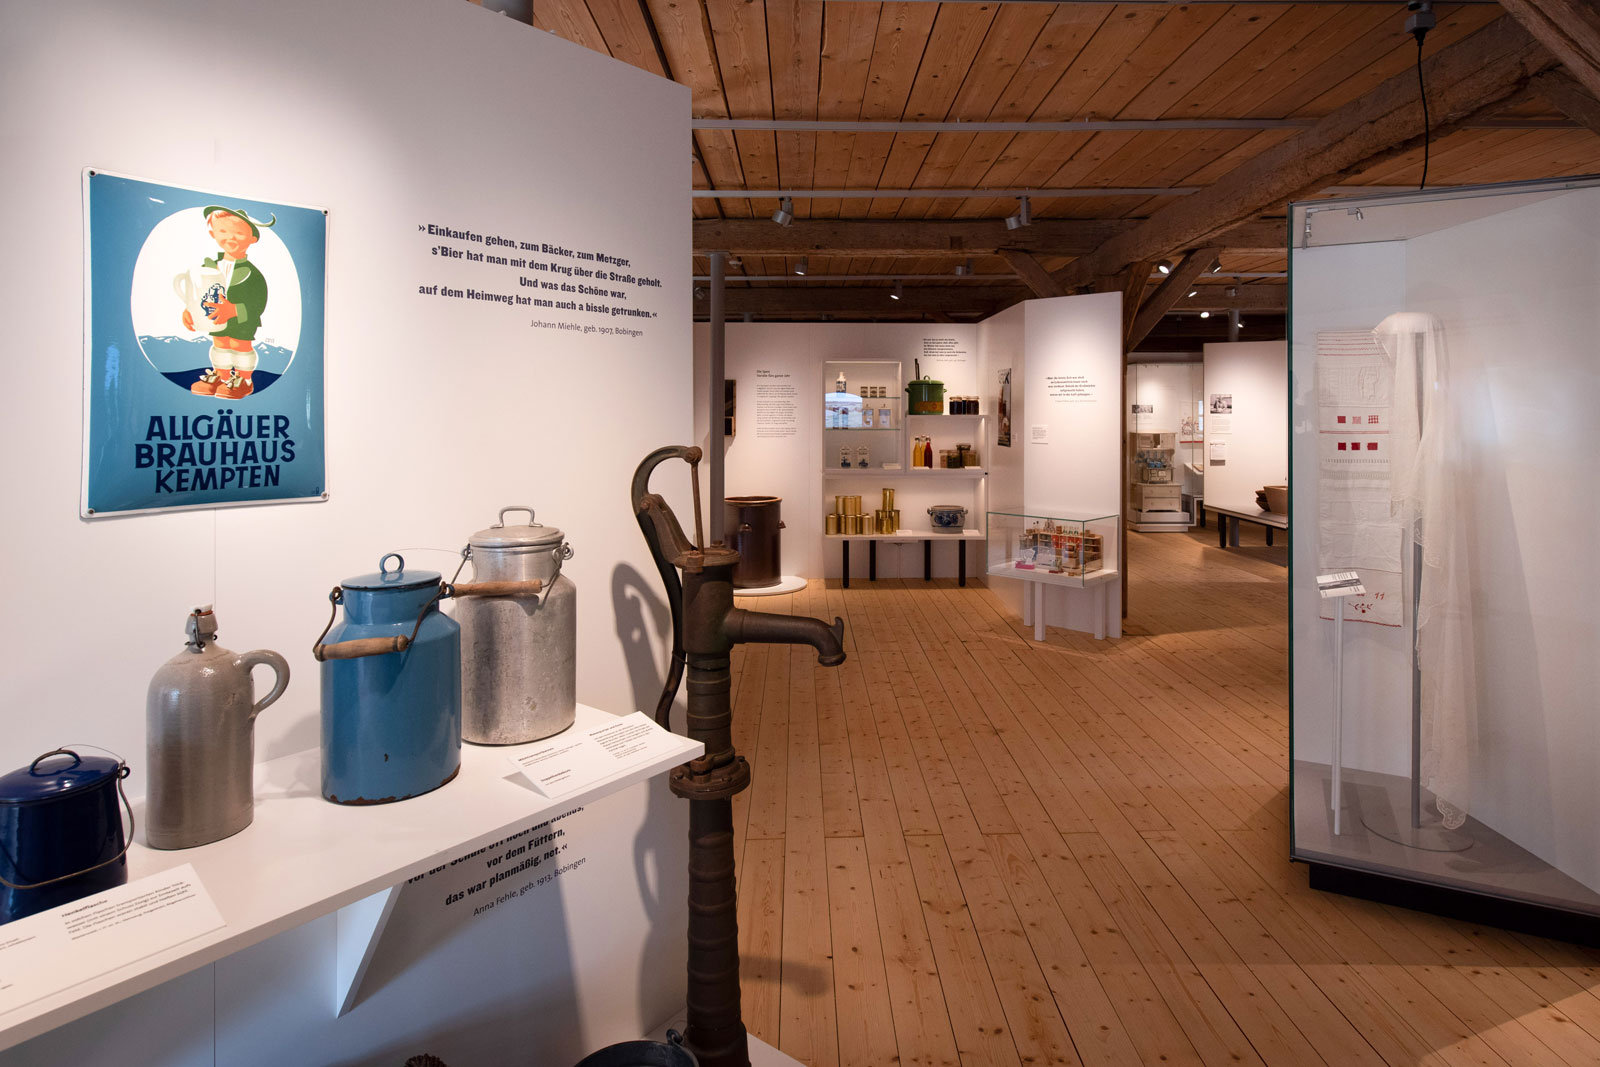 Das Referenzbild für Ausstellungsgestaltung aus der Dauerausstellung Tradition und Umbruch zeigt den Ausstellungsparcours mit einer Exponatpräsentation.